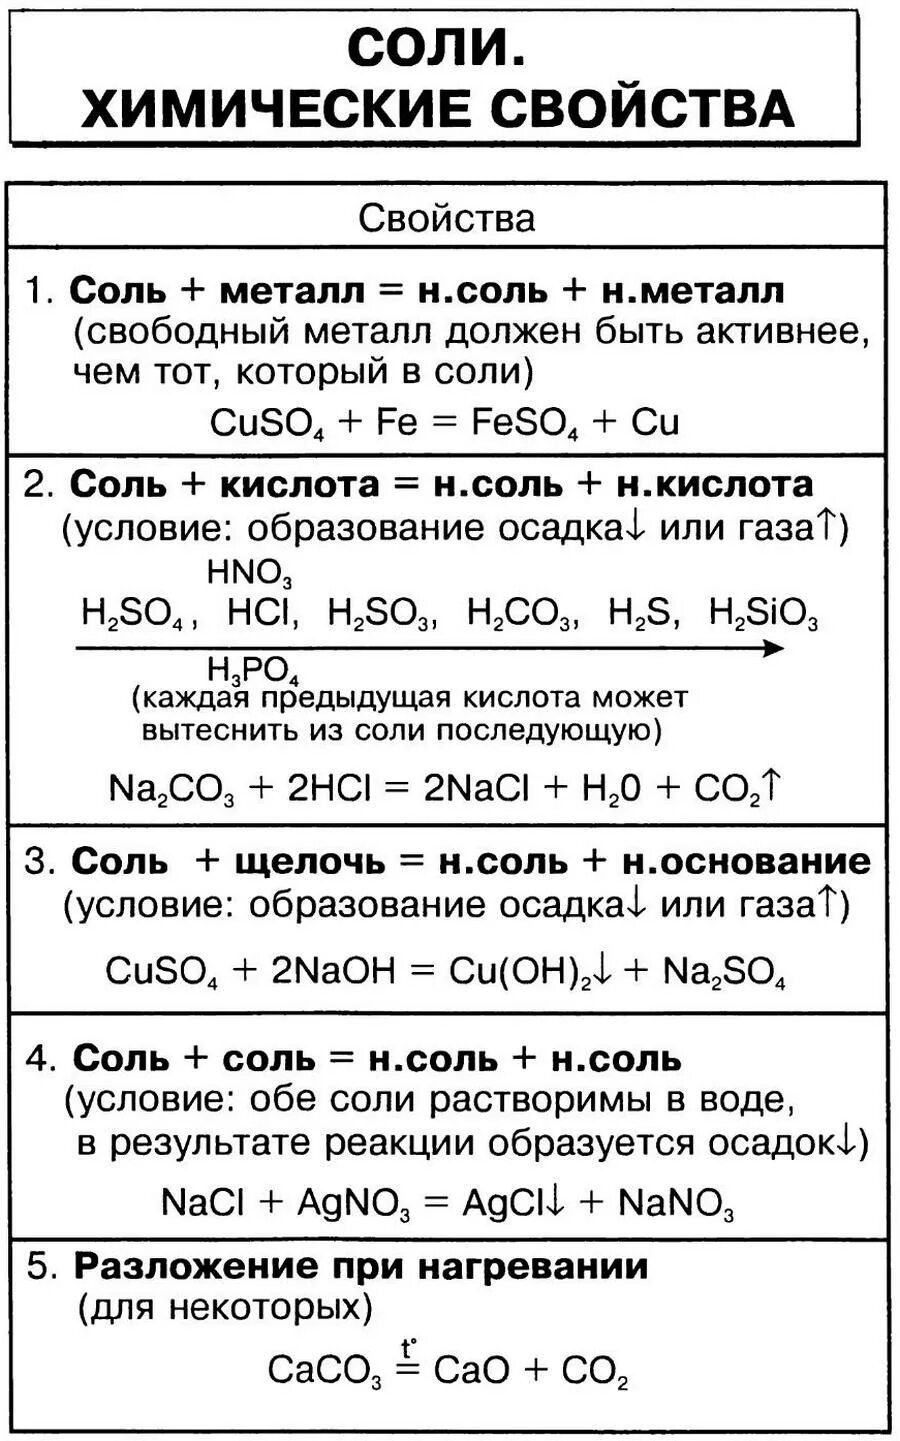 Самостоятельная химические свойства кислот 8 класс. Химические свойства солей 8 класс химия таблица. Свойства солей химия 8 класс. Соли химические свойства 8 класс таблица. Химические свойства солей 8 класс.